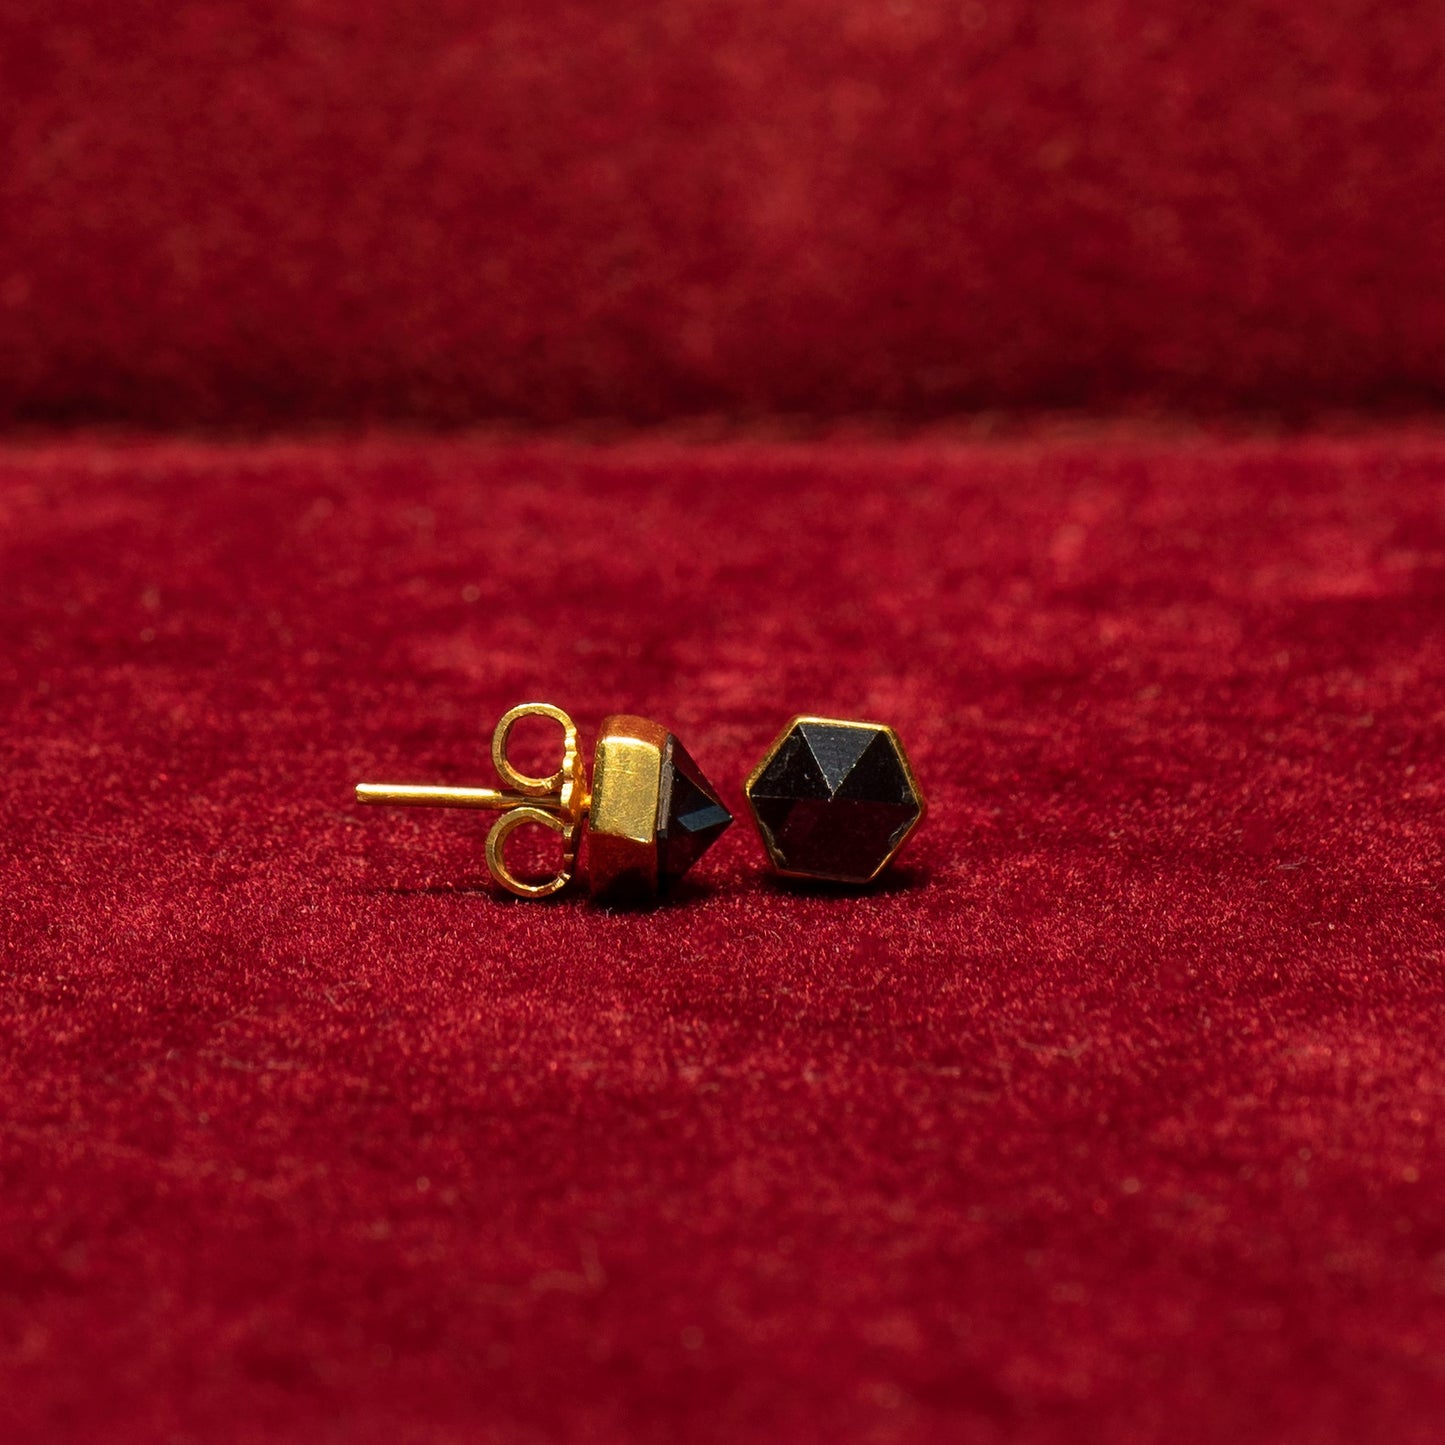 22k Gold stud earrings with garnets